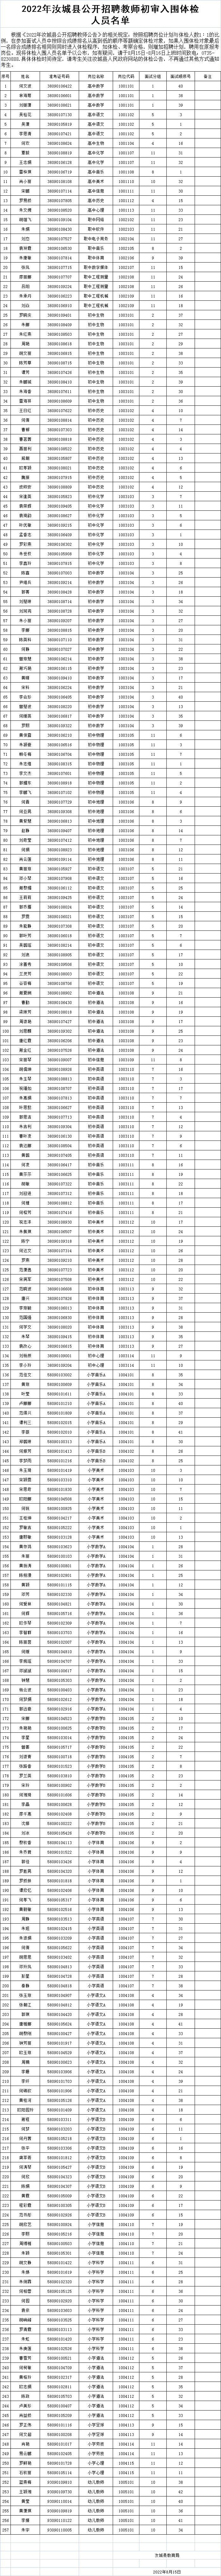 2022年汝城县公开招聘教师初审入围体检人员名单公示(图1)